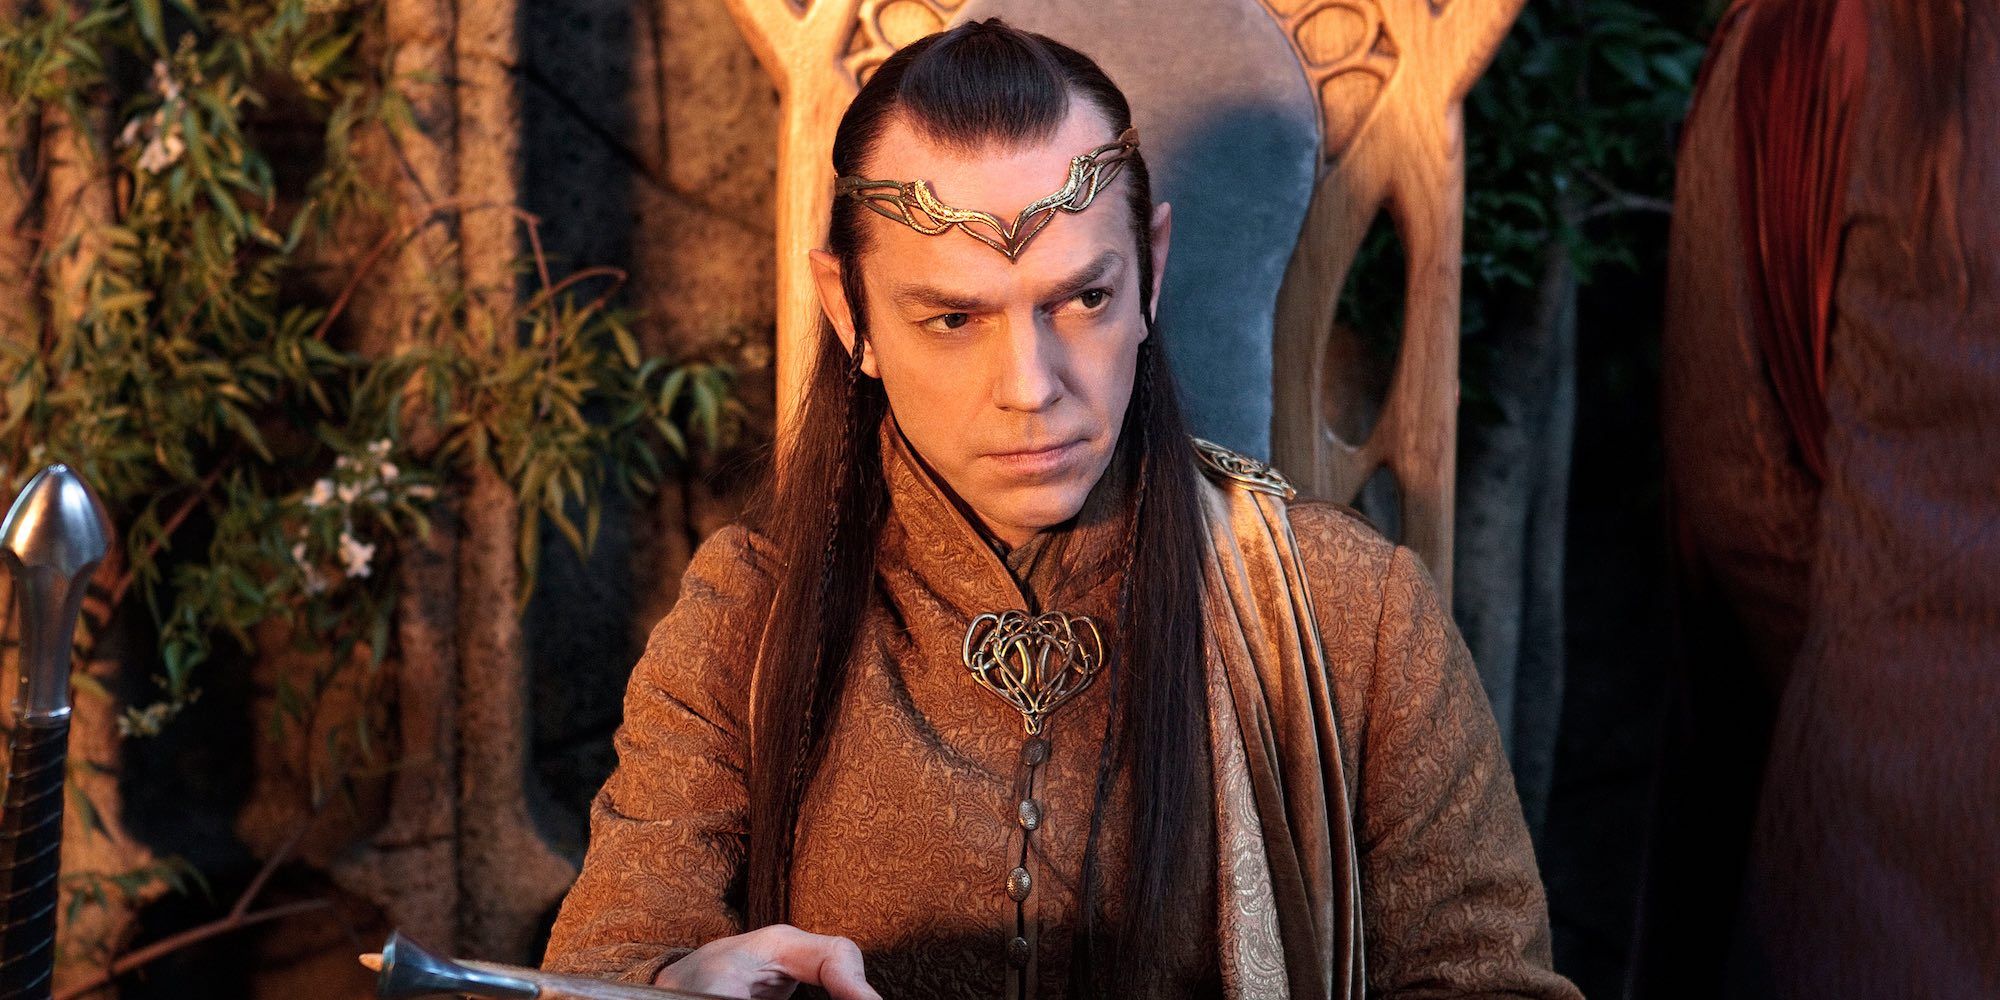 Hugo Weaving on 'The Hobbit' return